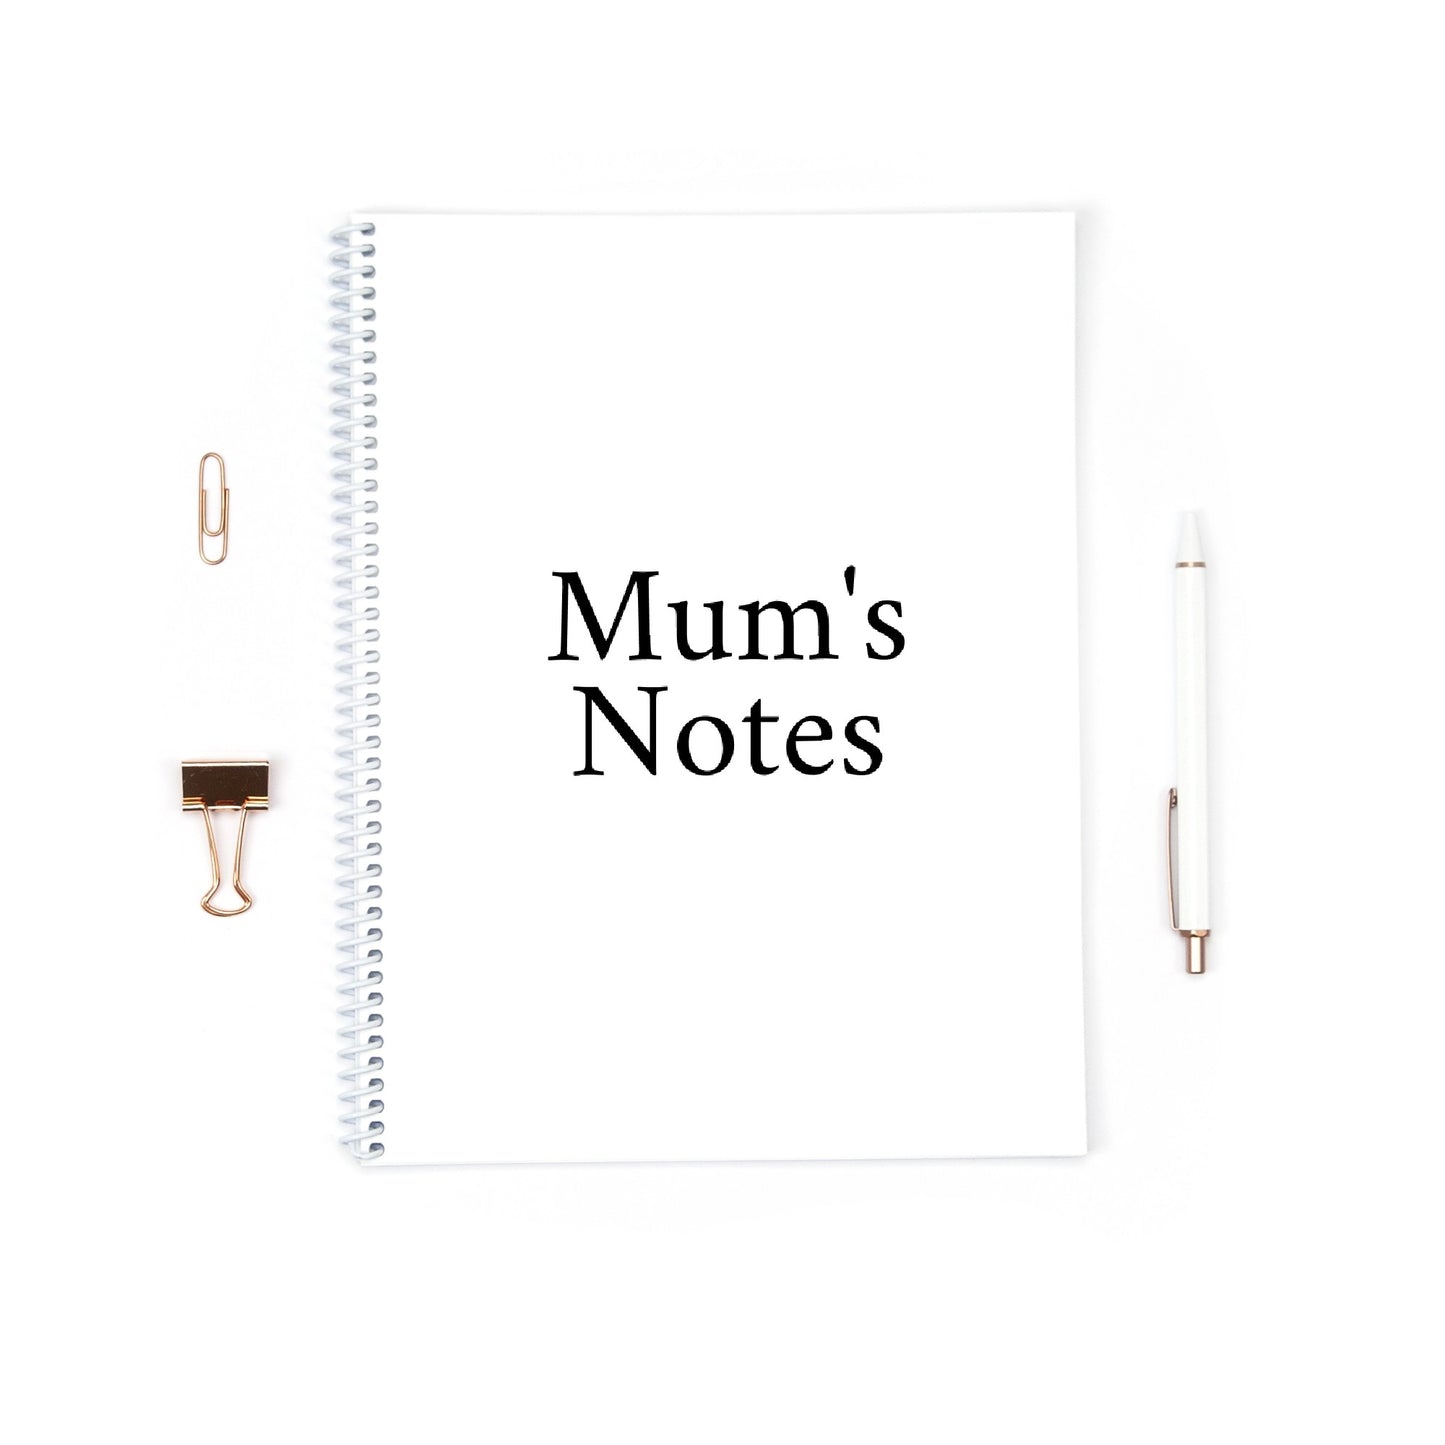 Mum's Notes | Mum Gift | Mum Notebook Gift | Mum Gift Idea